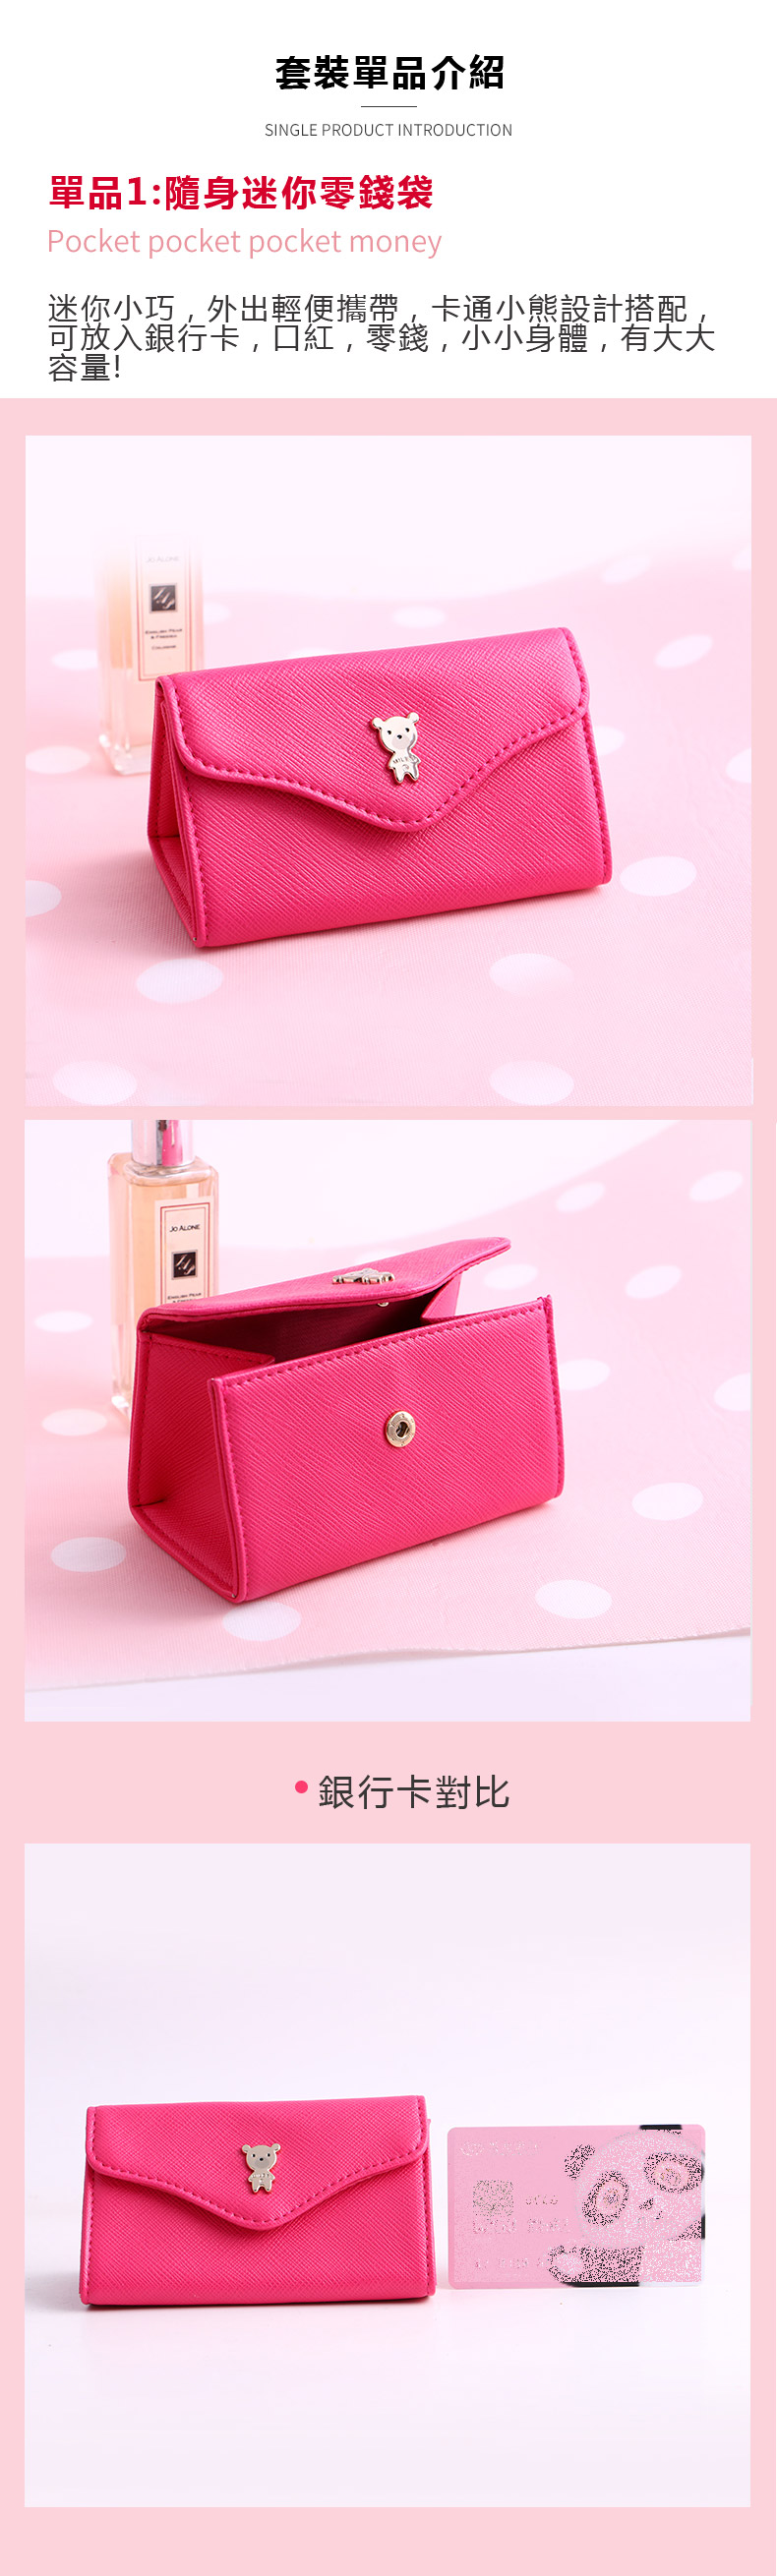 創意小物館 浪漫可愛粉紅套裝禮盒